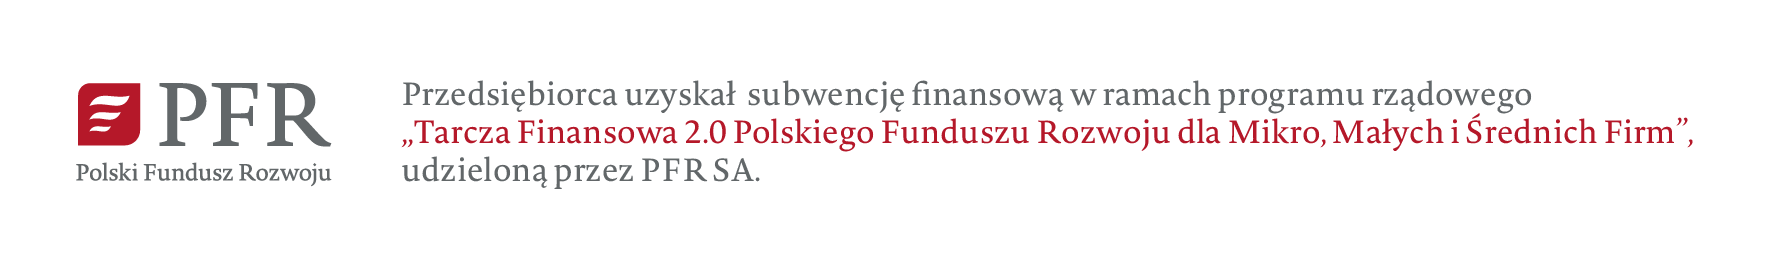 PFR Przedsiębiorca uzyskał subwencję finansową w ramach programu rządowego Tarcza Finansowa 2.0 Polskiego Funduszu Rozwoju dla Mikro, Małych i Średnich Firm, Polski Fundusz Rozwoju udzieloną przez PFR SA. 